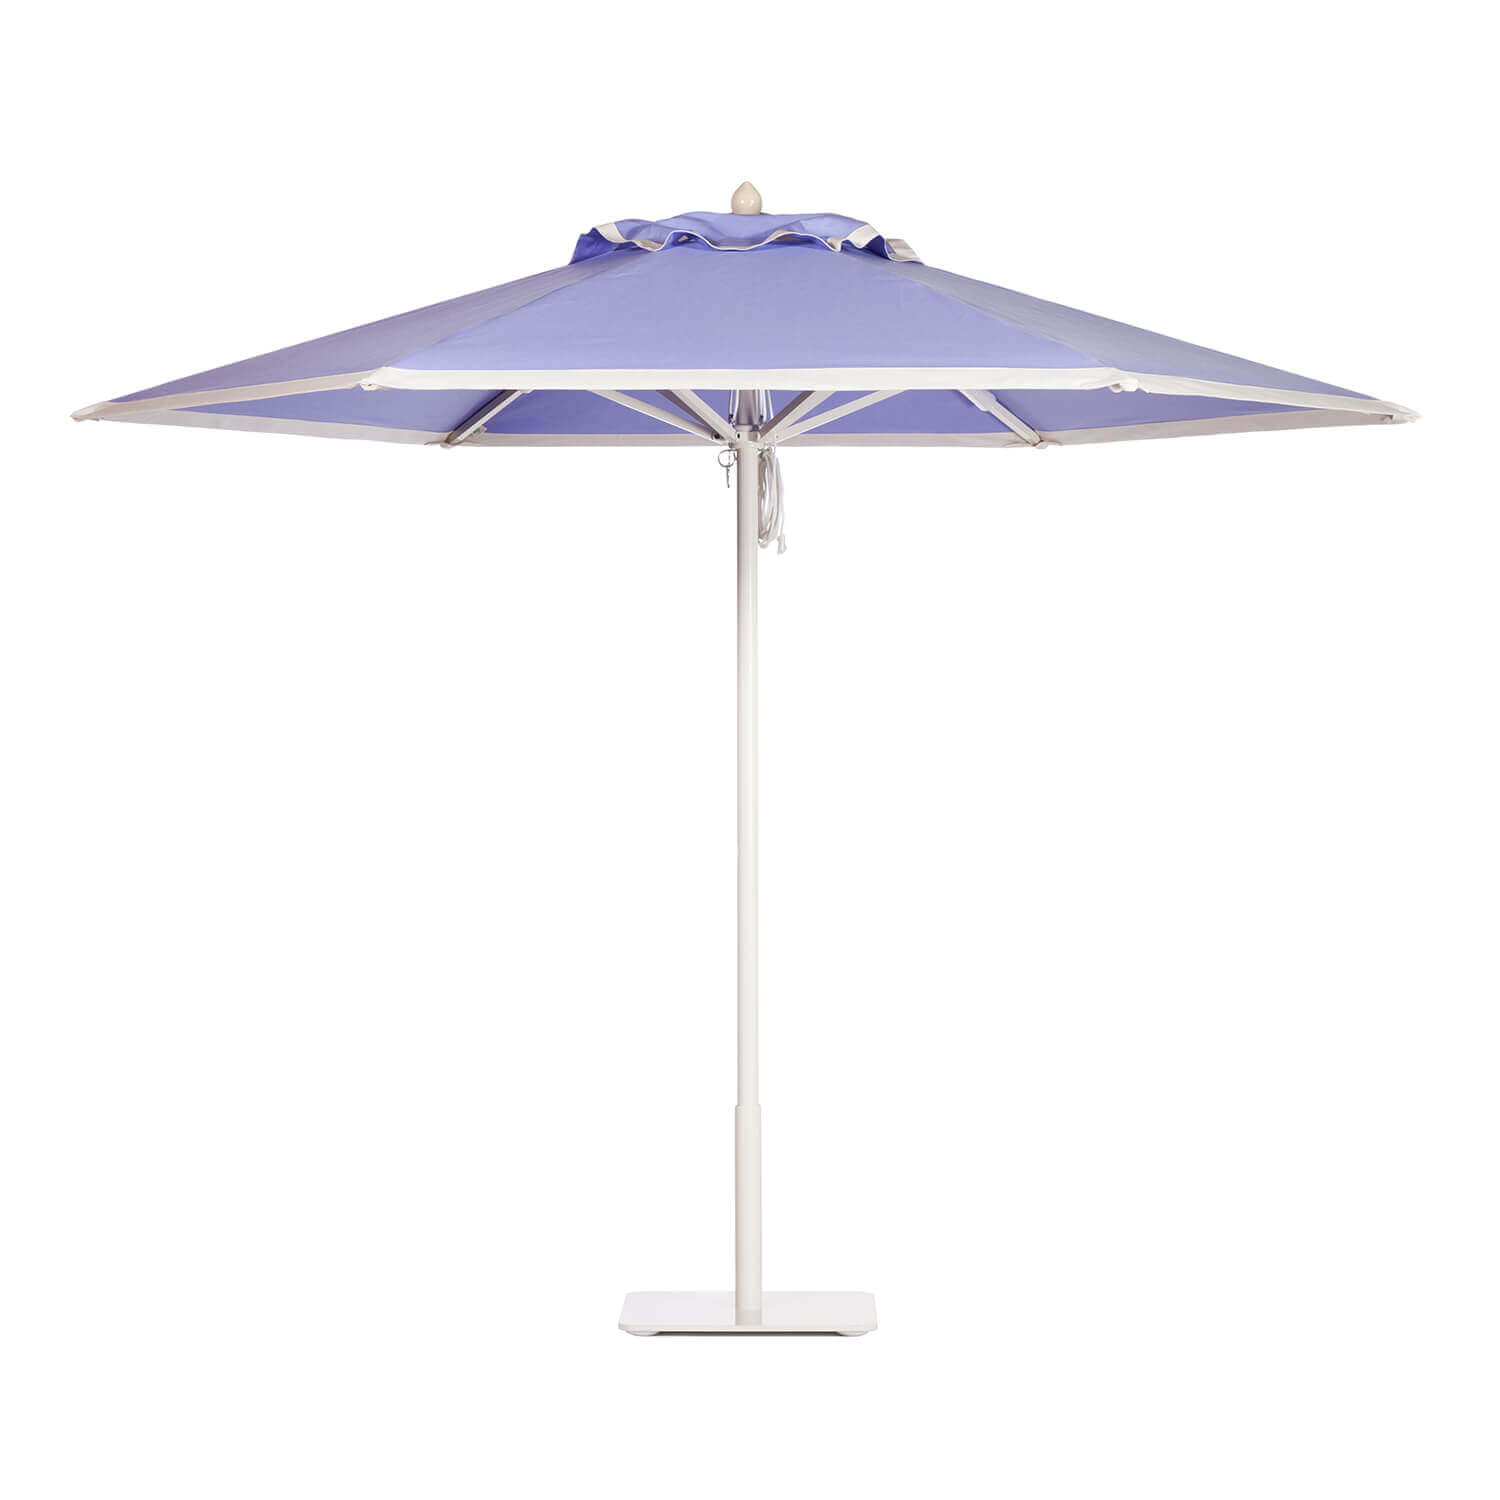 Lavender Cloud Umbrella Image